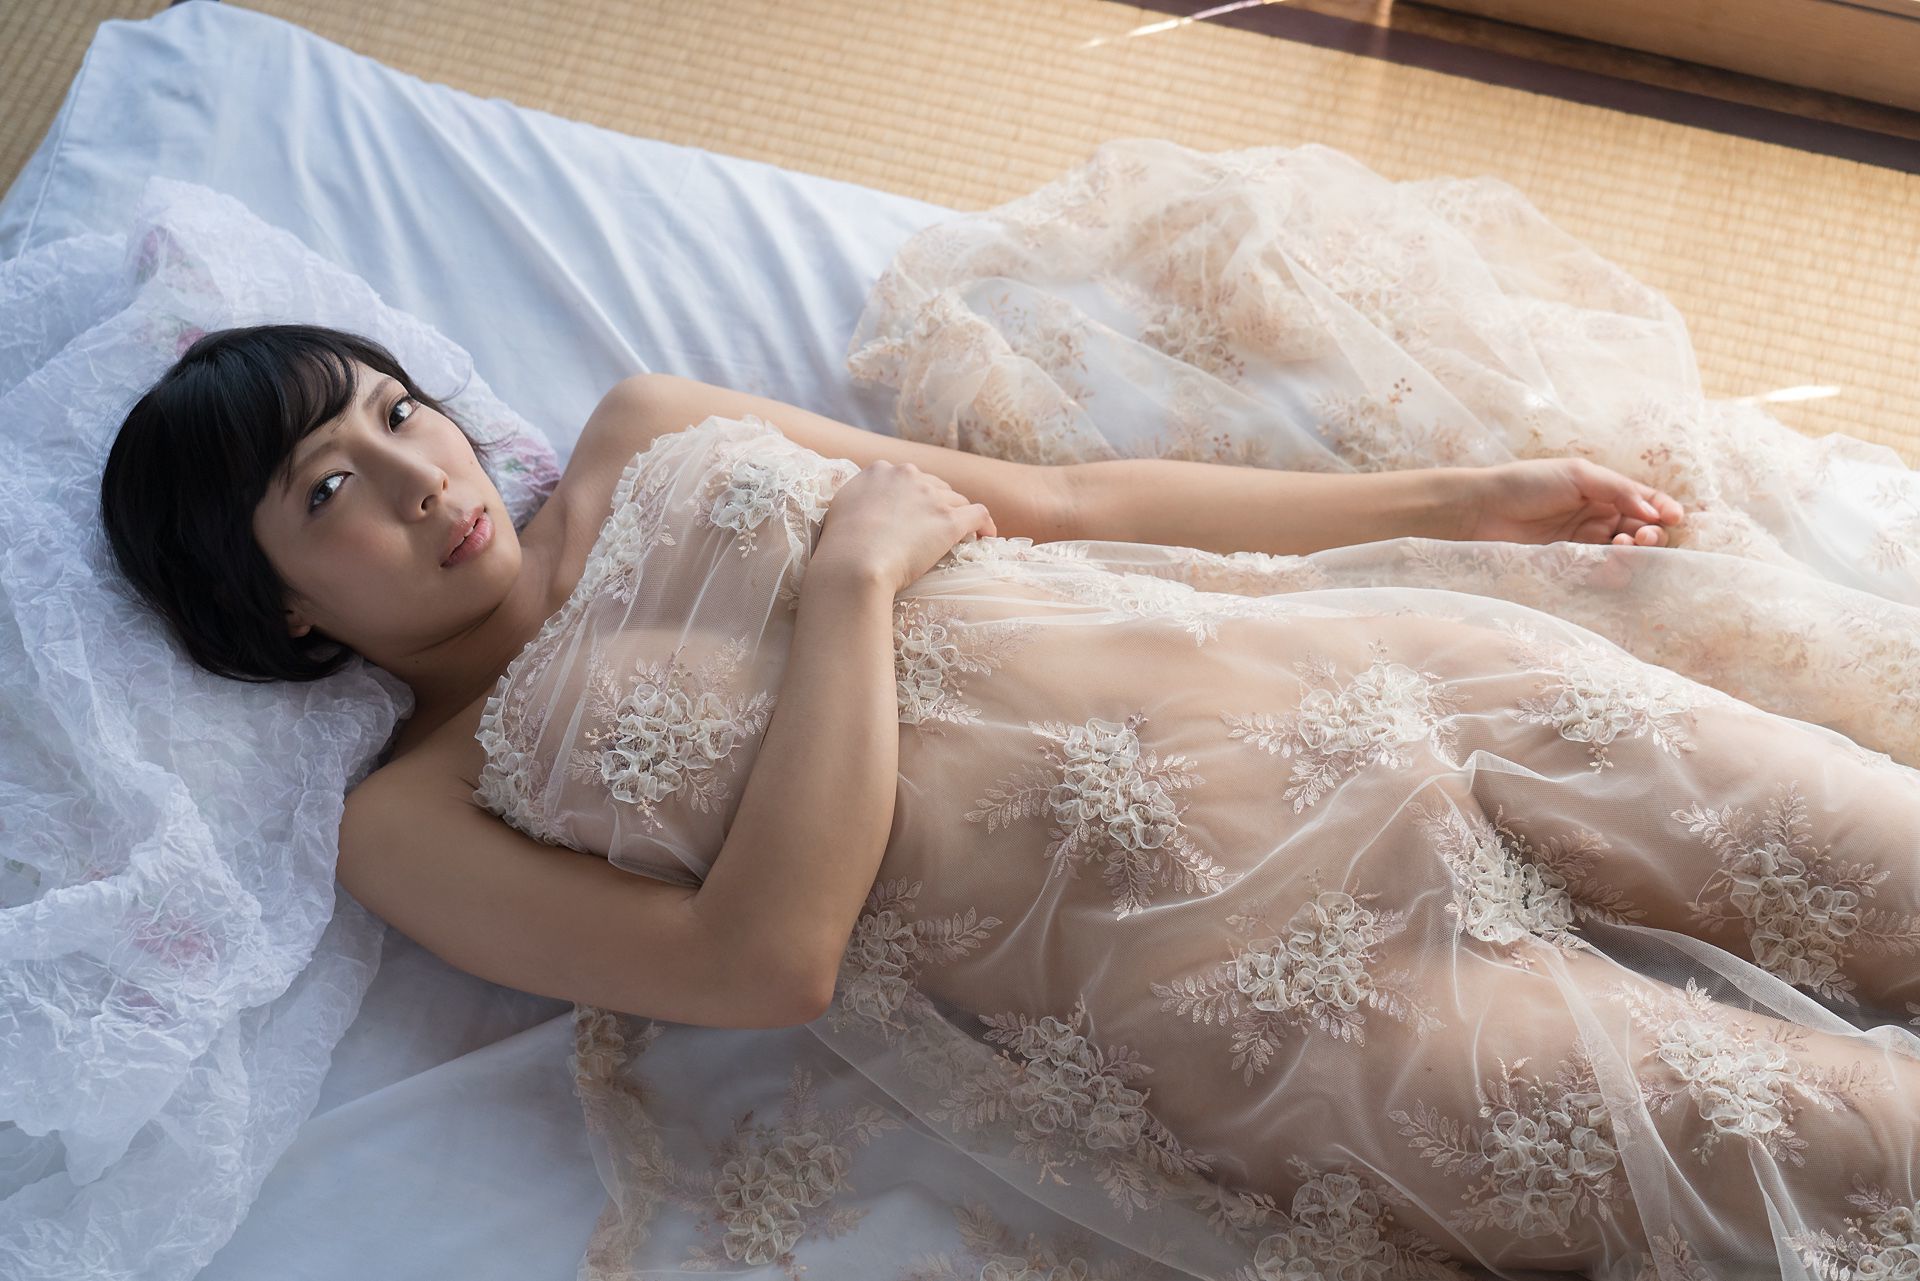 [Minisuka.tv] 麻倉まりな Marina Asakura - 蕾丝人体诱惑巨乳-第28张美女图片